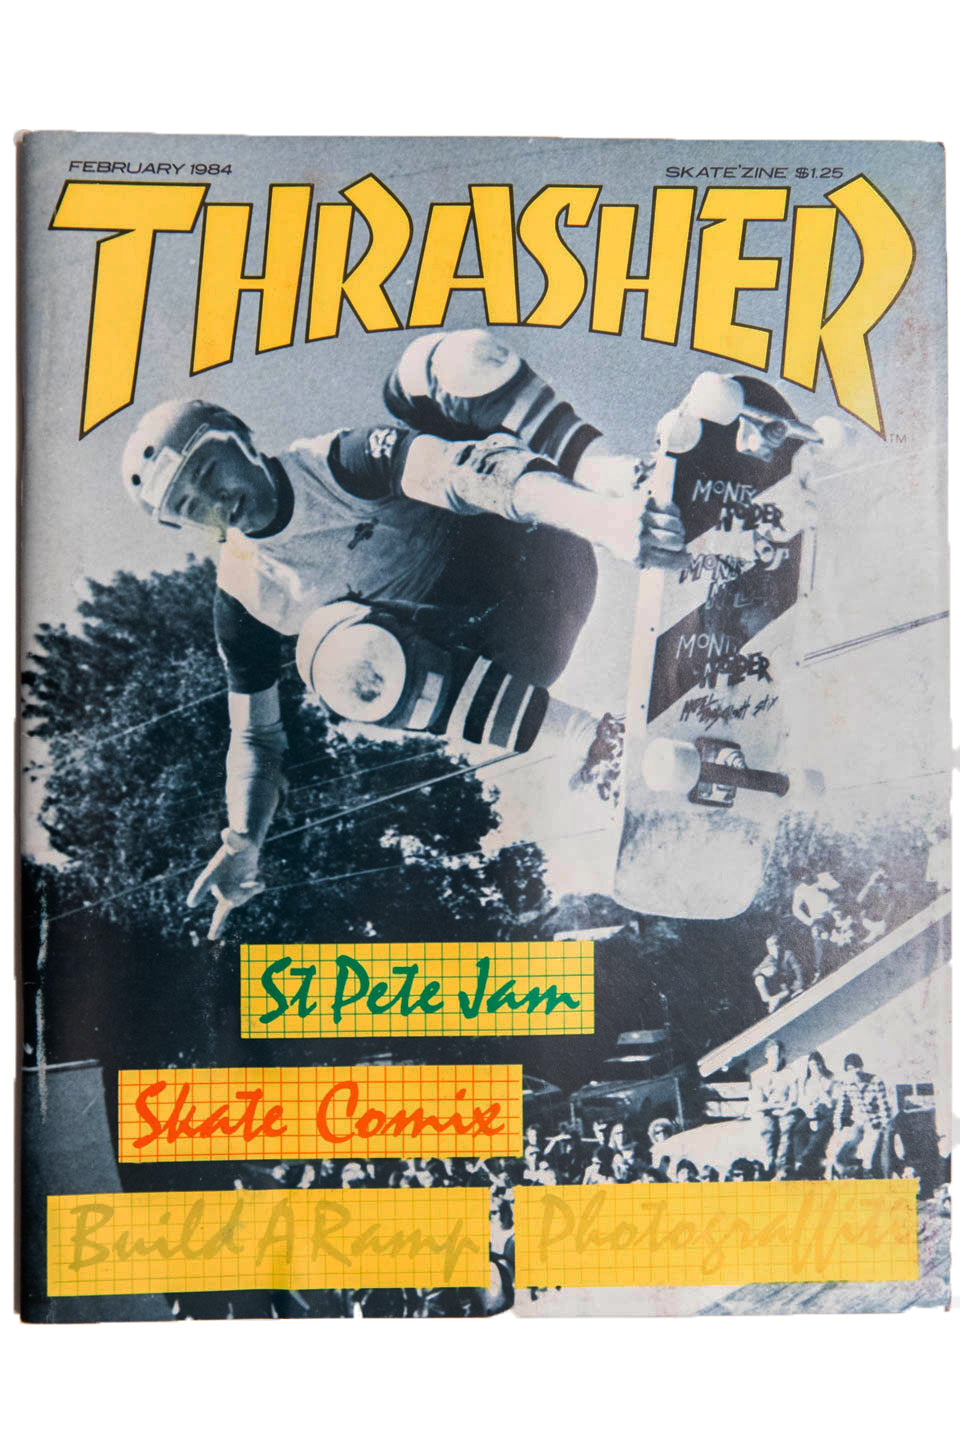 THRASHER MAGAZINE FEBRUARY 1984